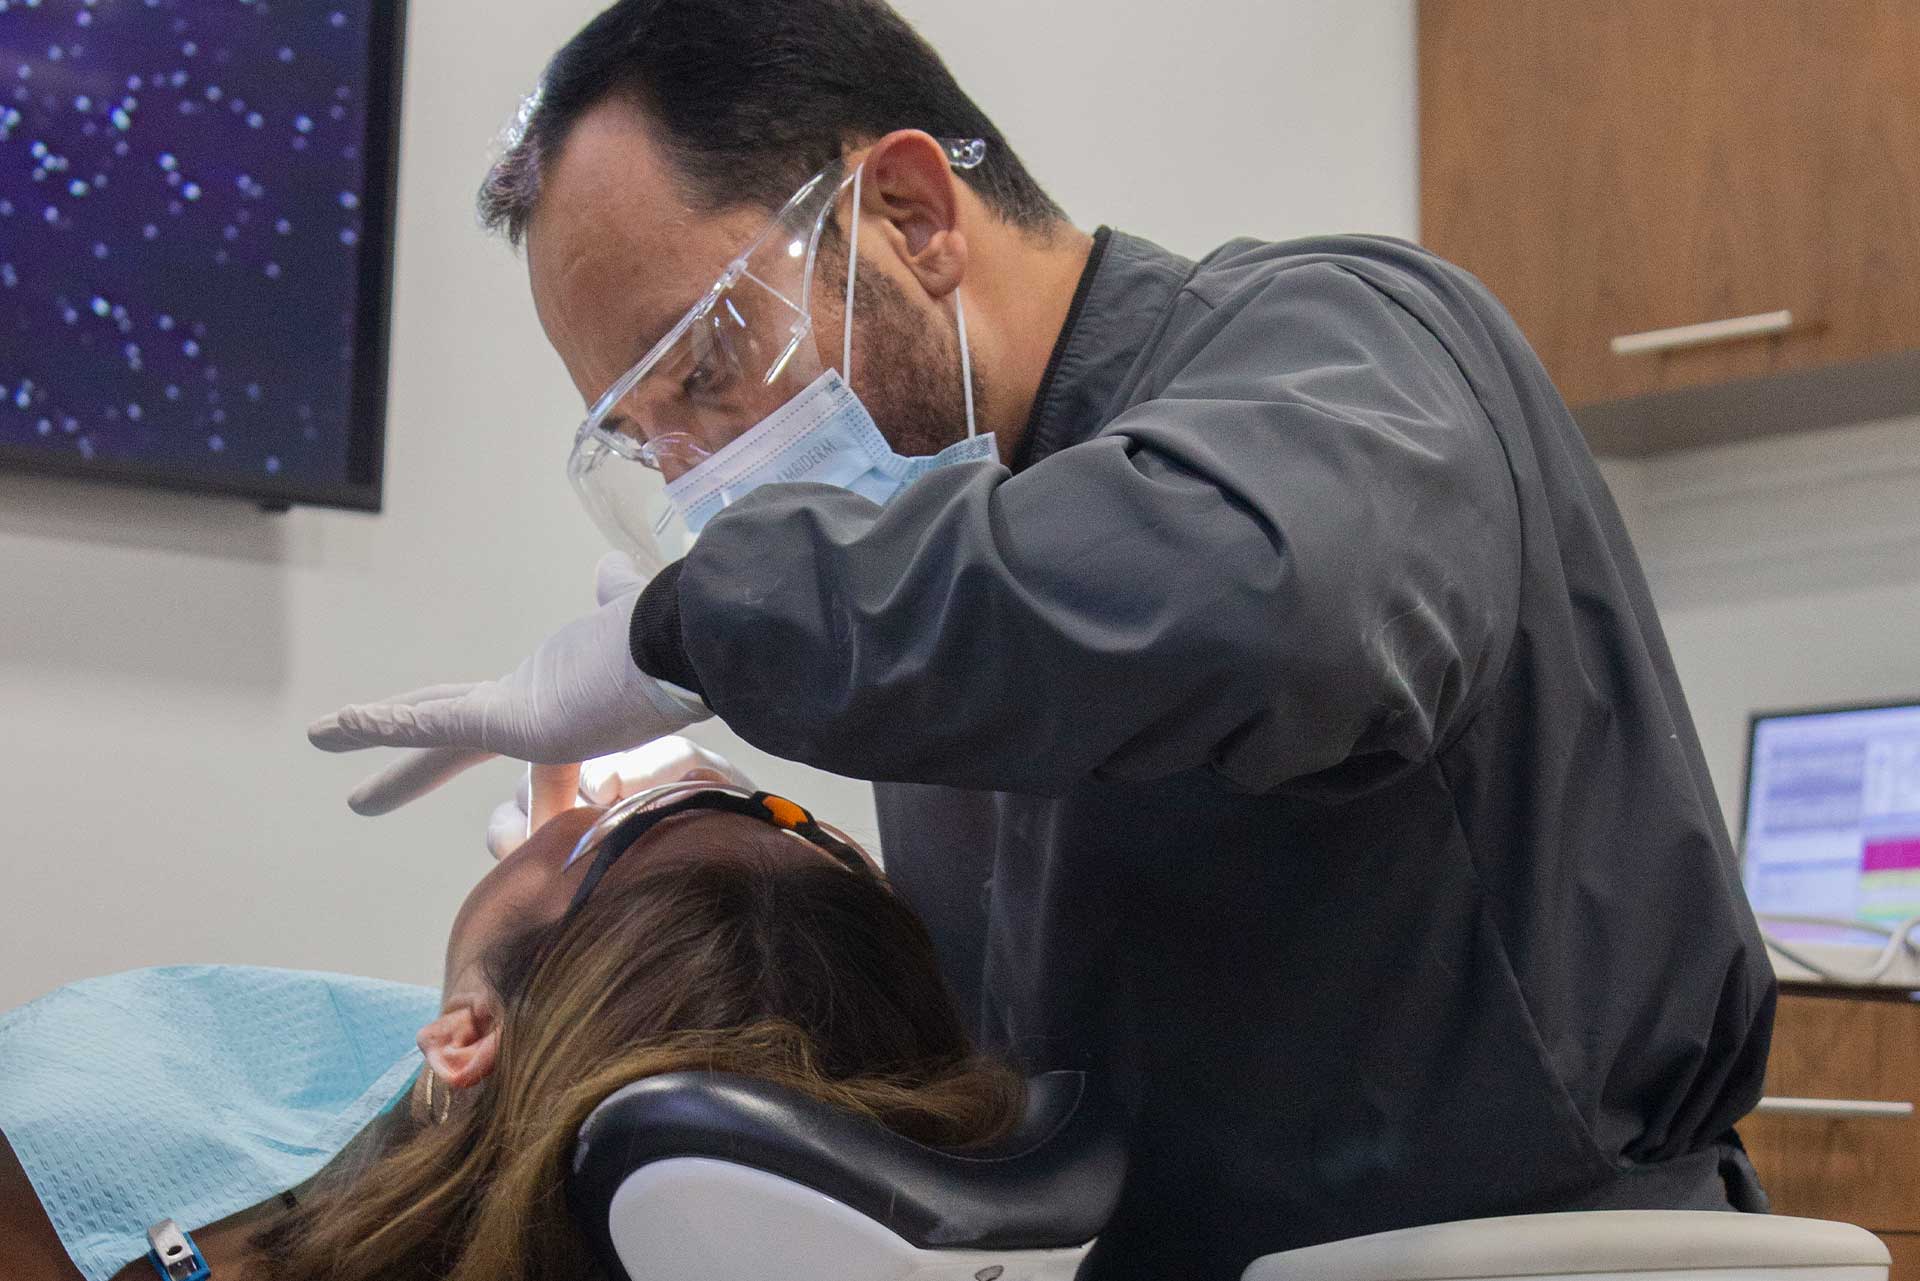 orthodontics invisalign braces tijuana mexico